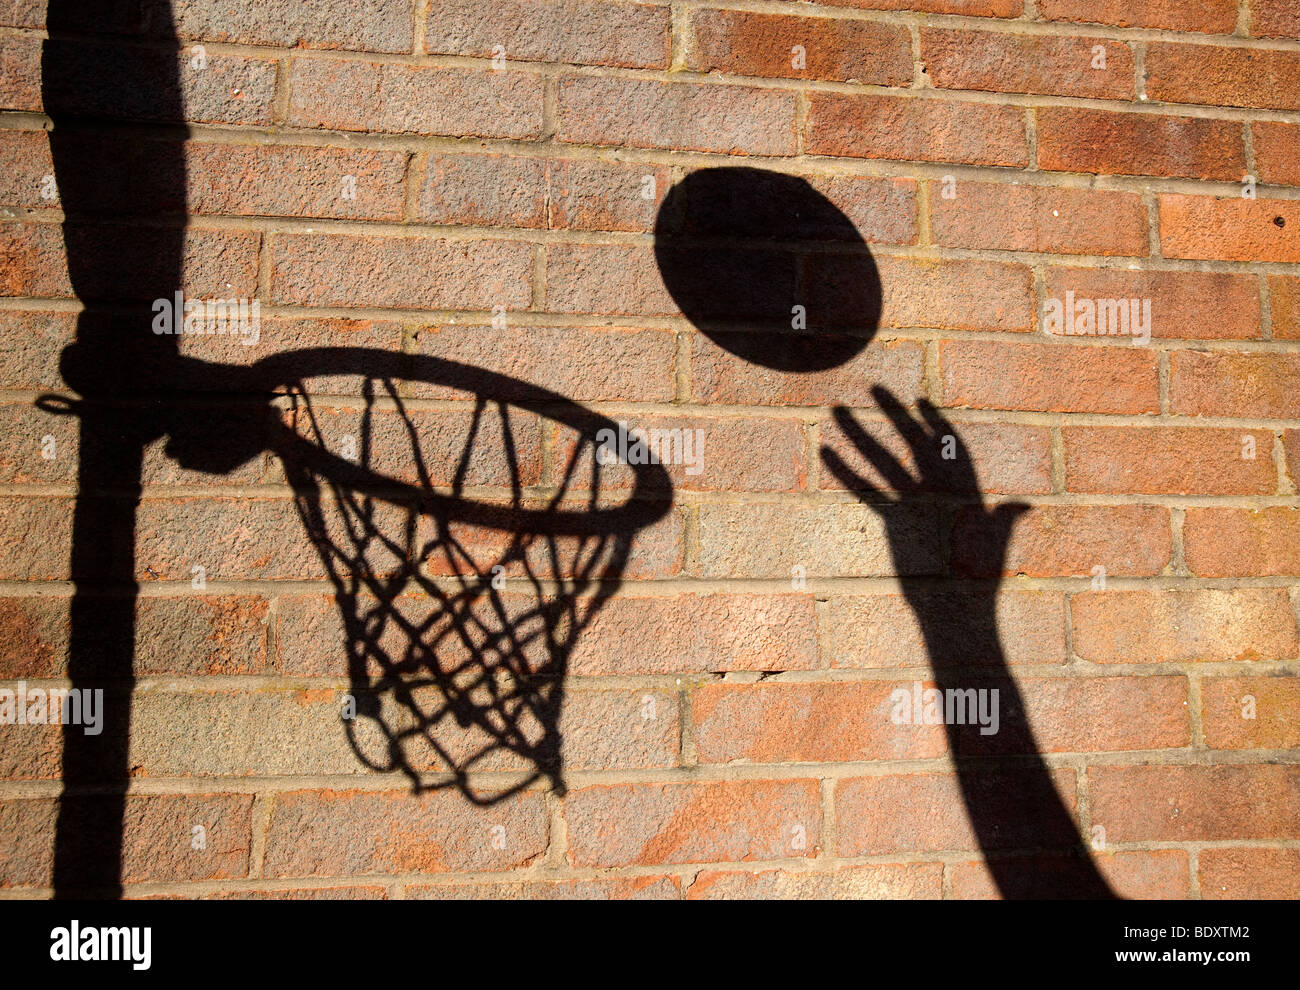 Un terrain de basket ball cerceau et jeter une ombre sur un mur de briques Banque D'Images